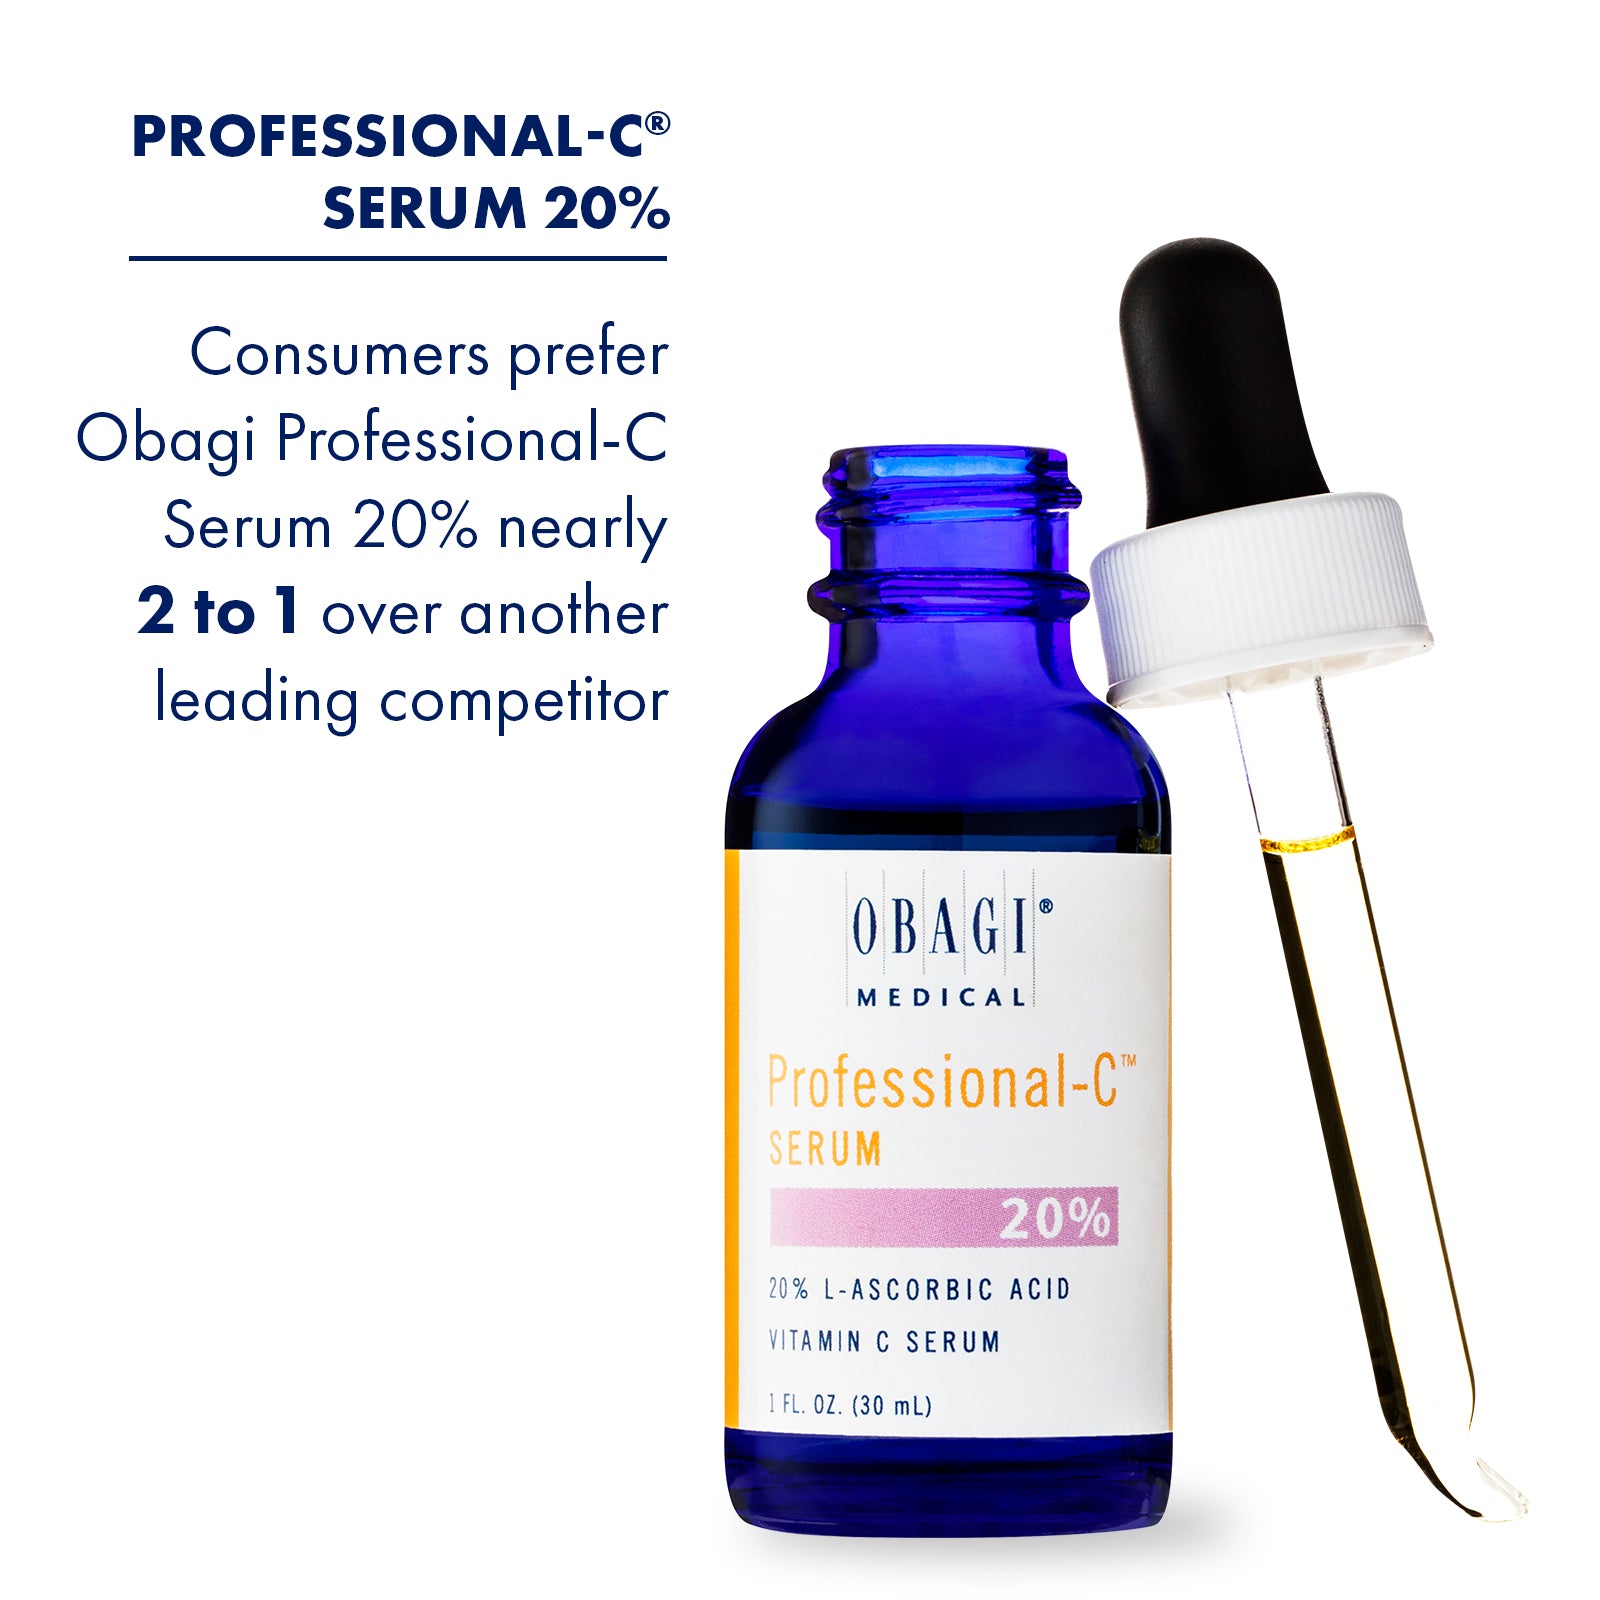 Professional-C® Serum 20%